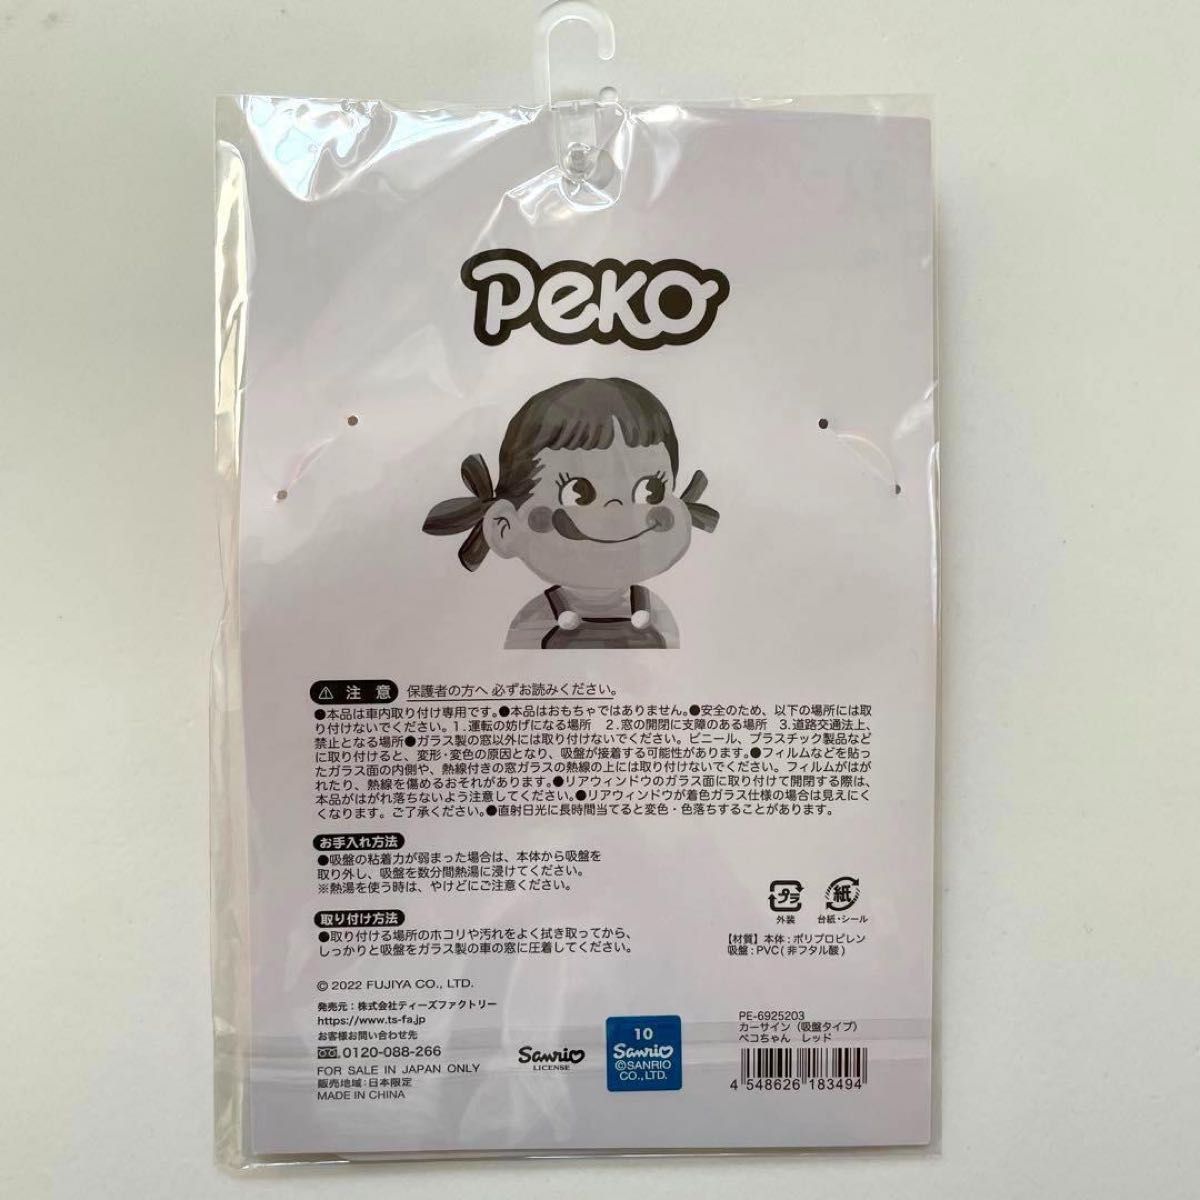 ぺこちゃん カーサイン 吸盤タイプ レッド Peko カーアクセサリー